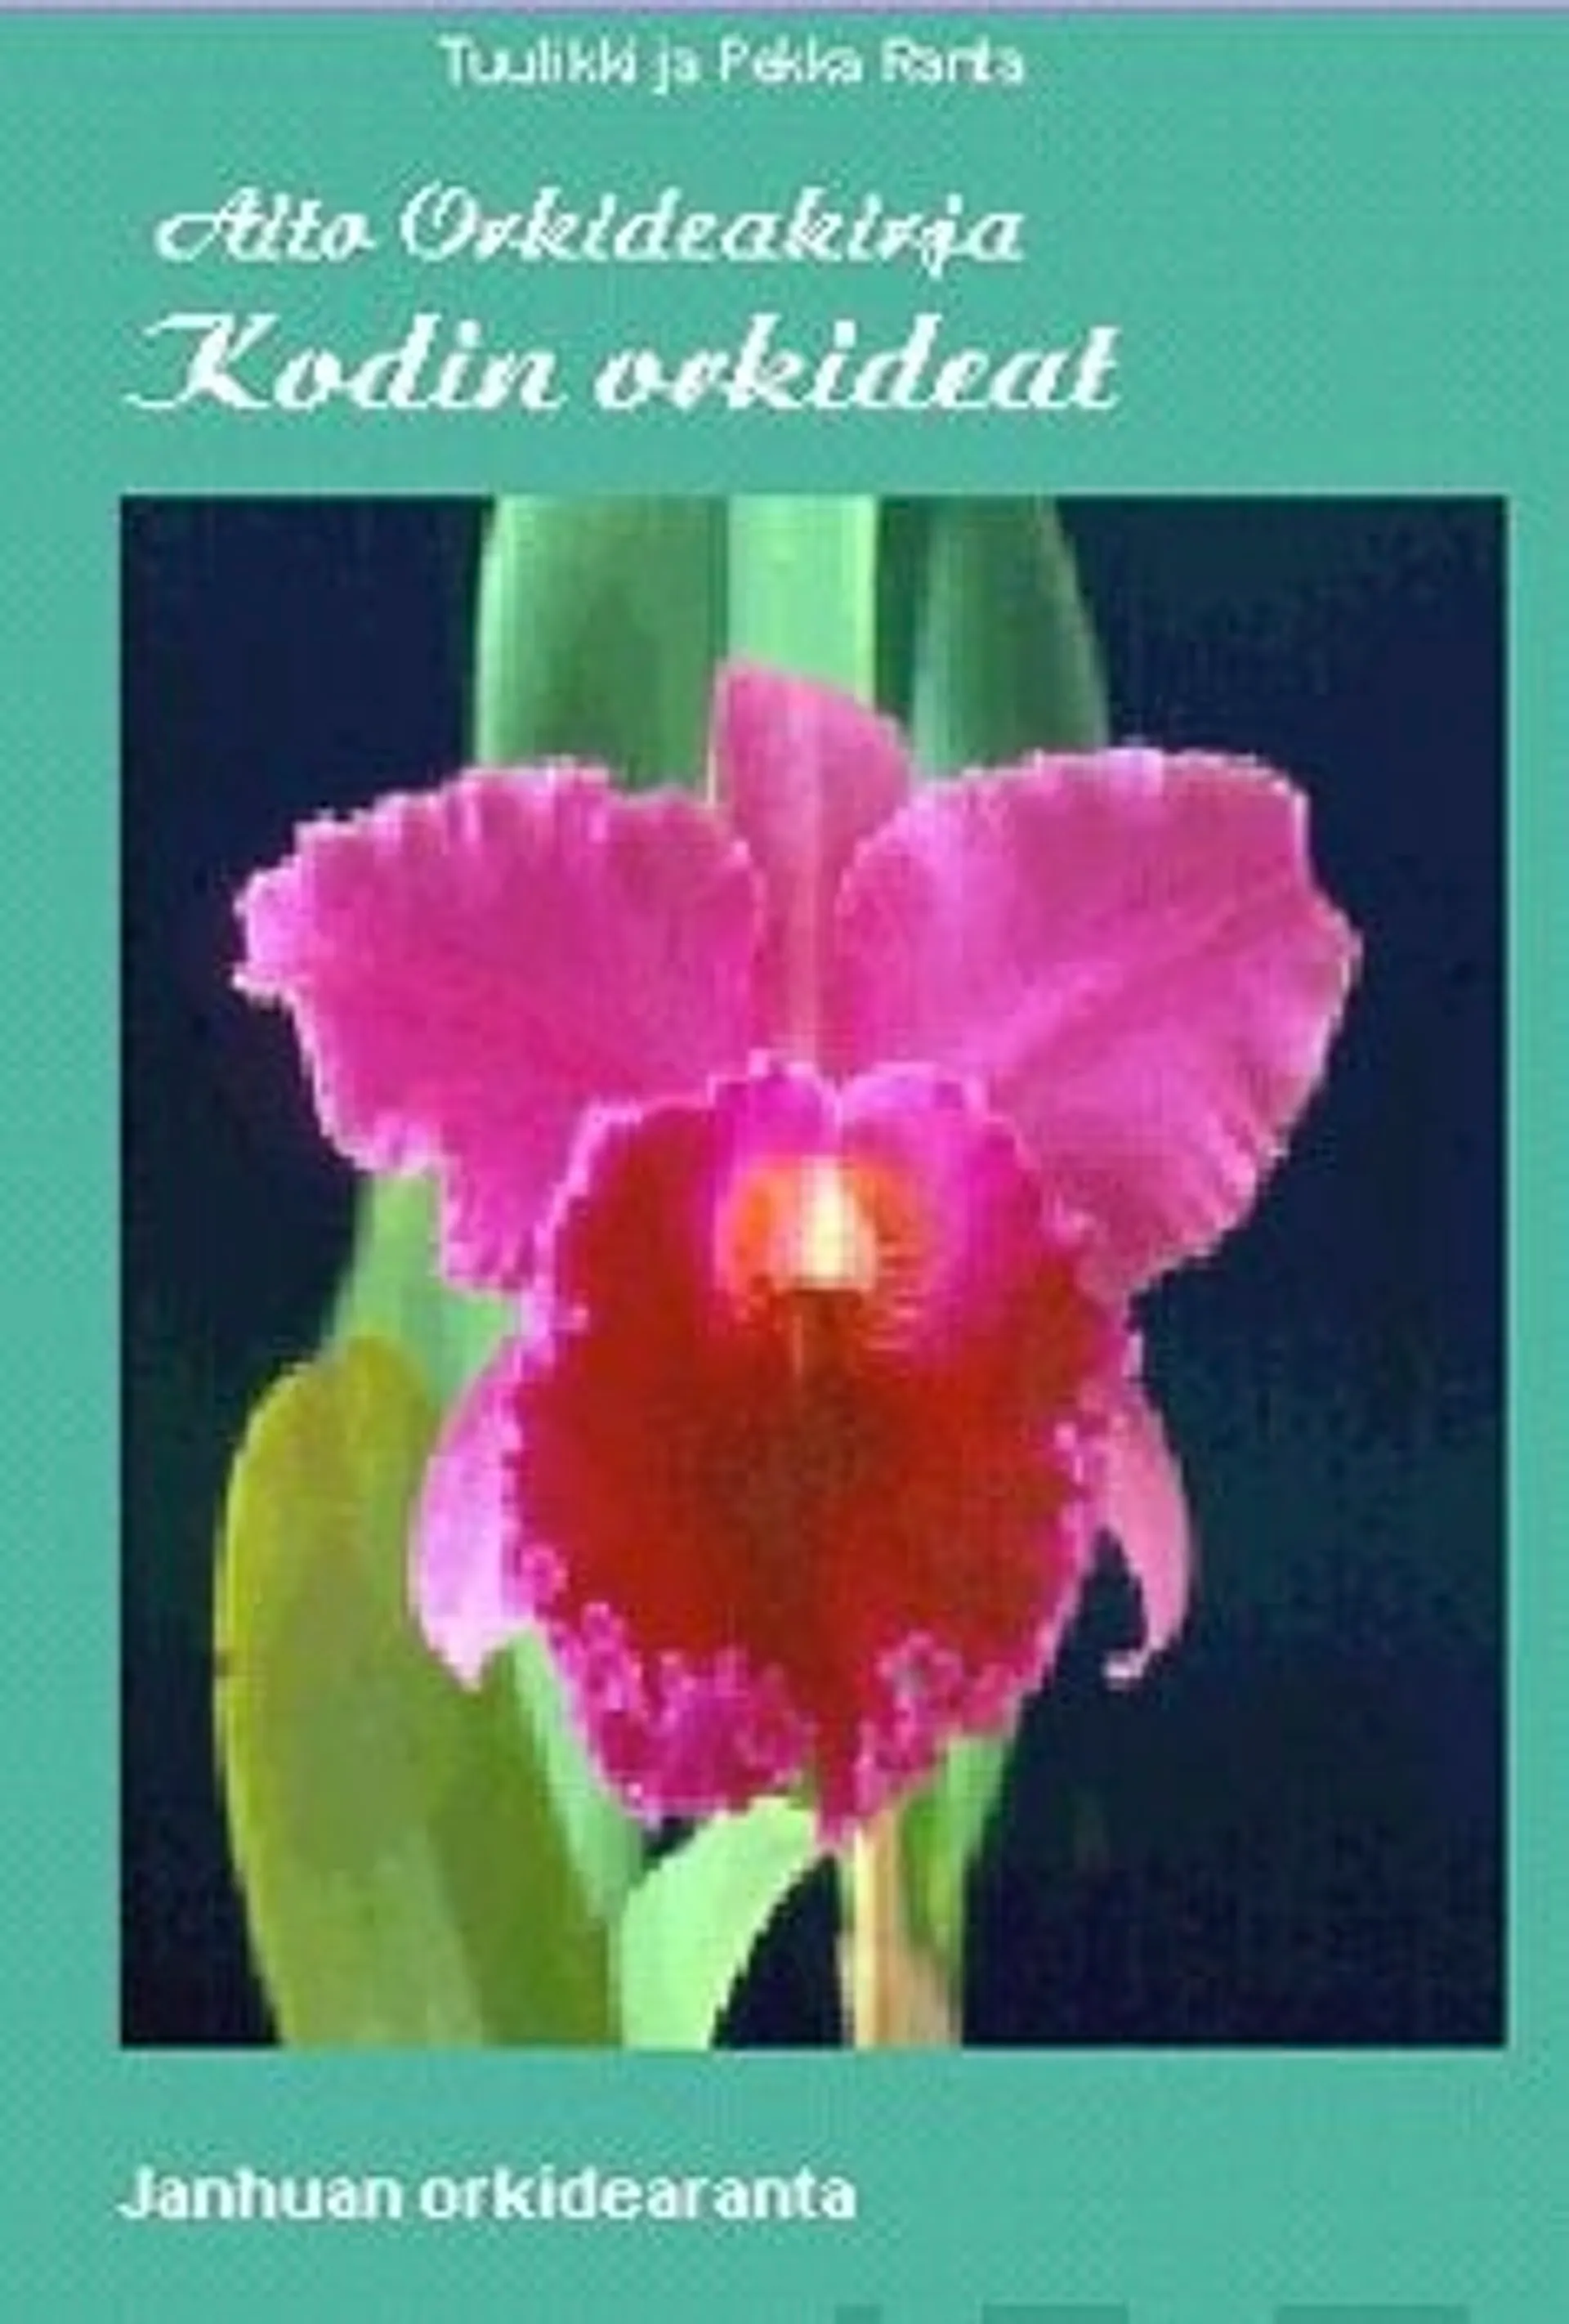 Aito orkideakirja 1 - Kodin orkideat